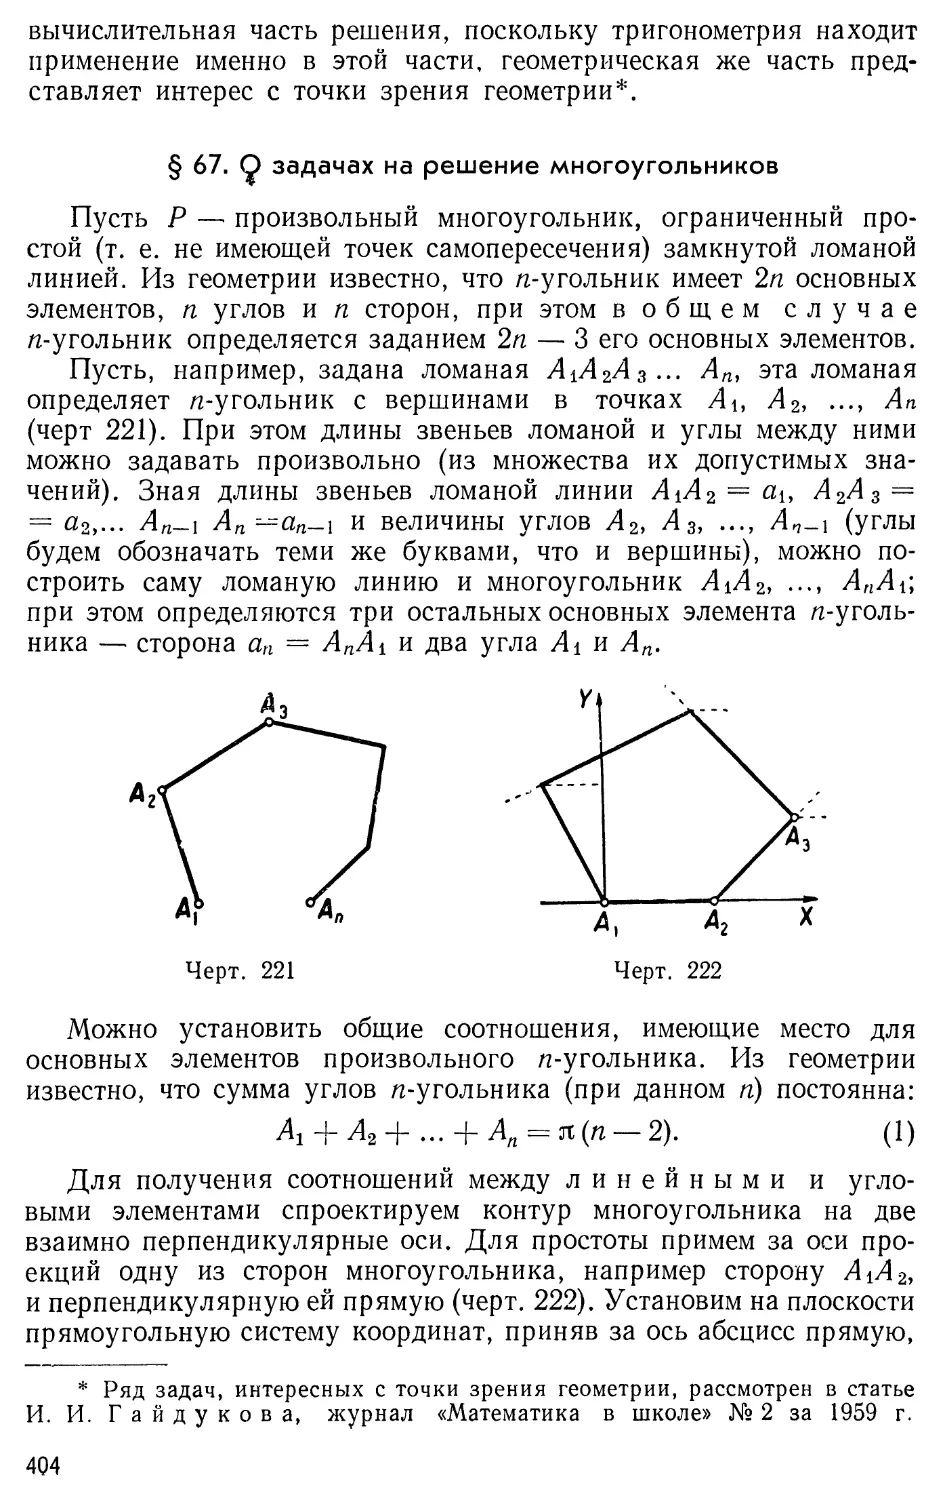 § 67.О задачах на решение многоугольников